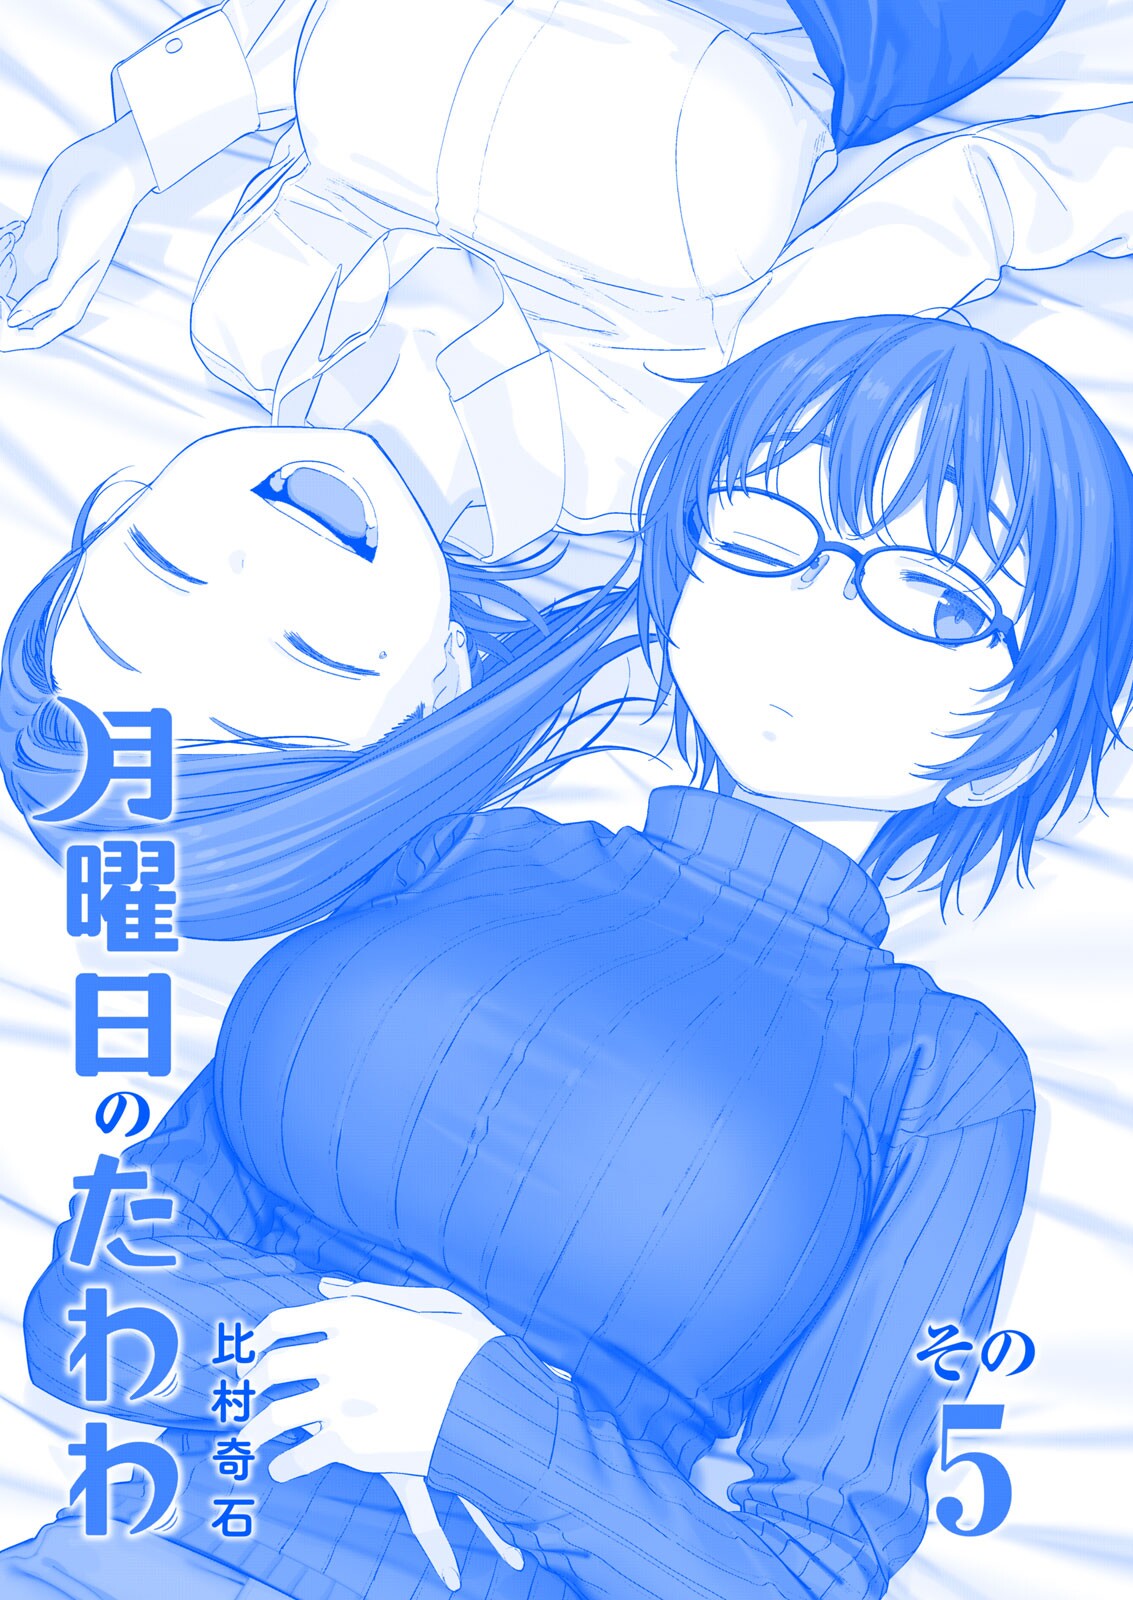 Read Getsuyoubi No Tawawa (Twitter Webcomic) (Fan Colored) Vol.1 Chapter 2:  Part I: Manga on Mangakakalot